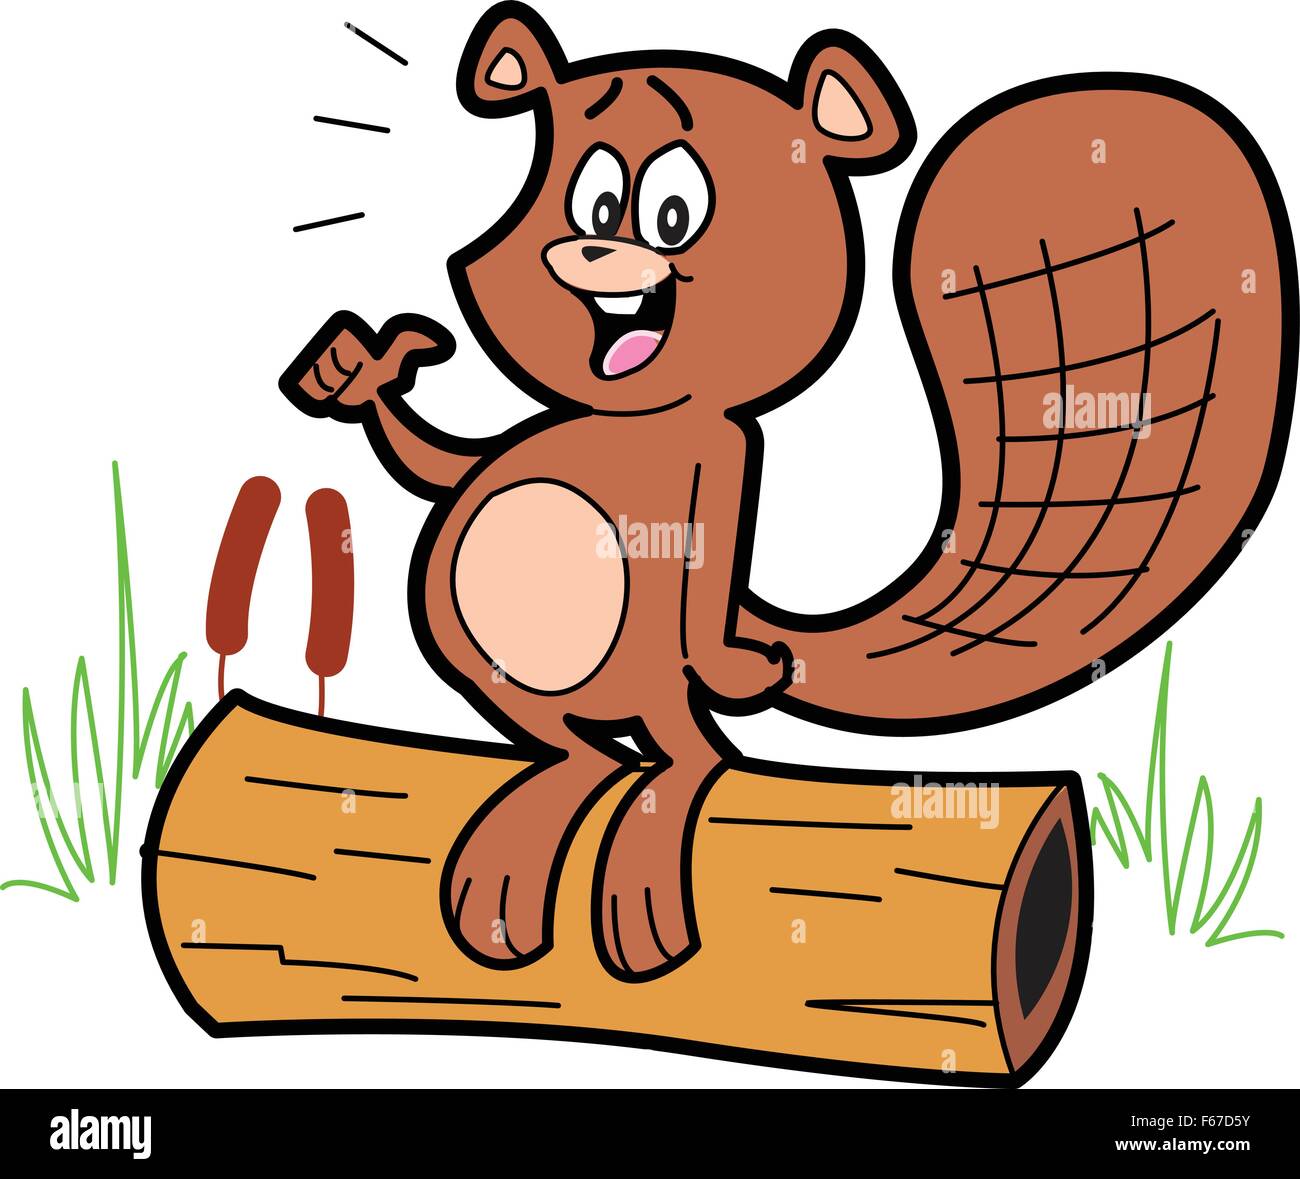 Glucklich Cartoon Beaver Stehend Auf Einem Baumstamm Stock Vektorgrafik Alamy